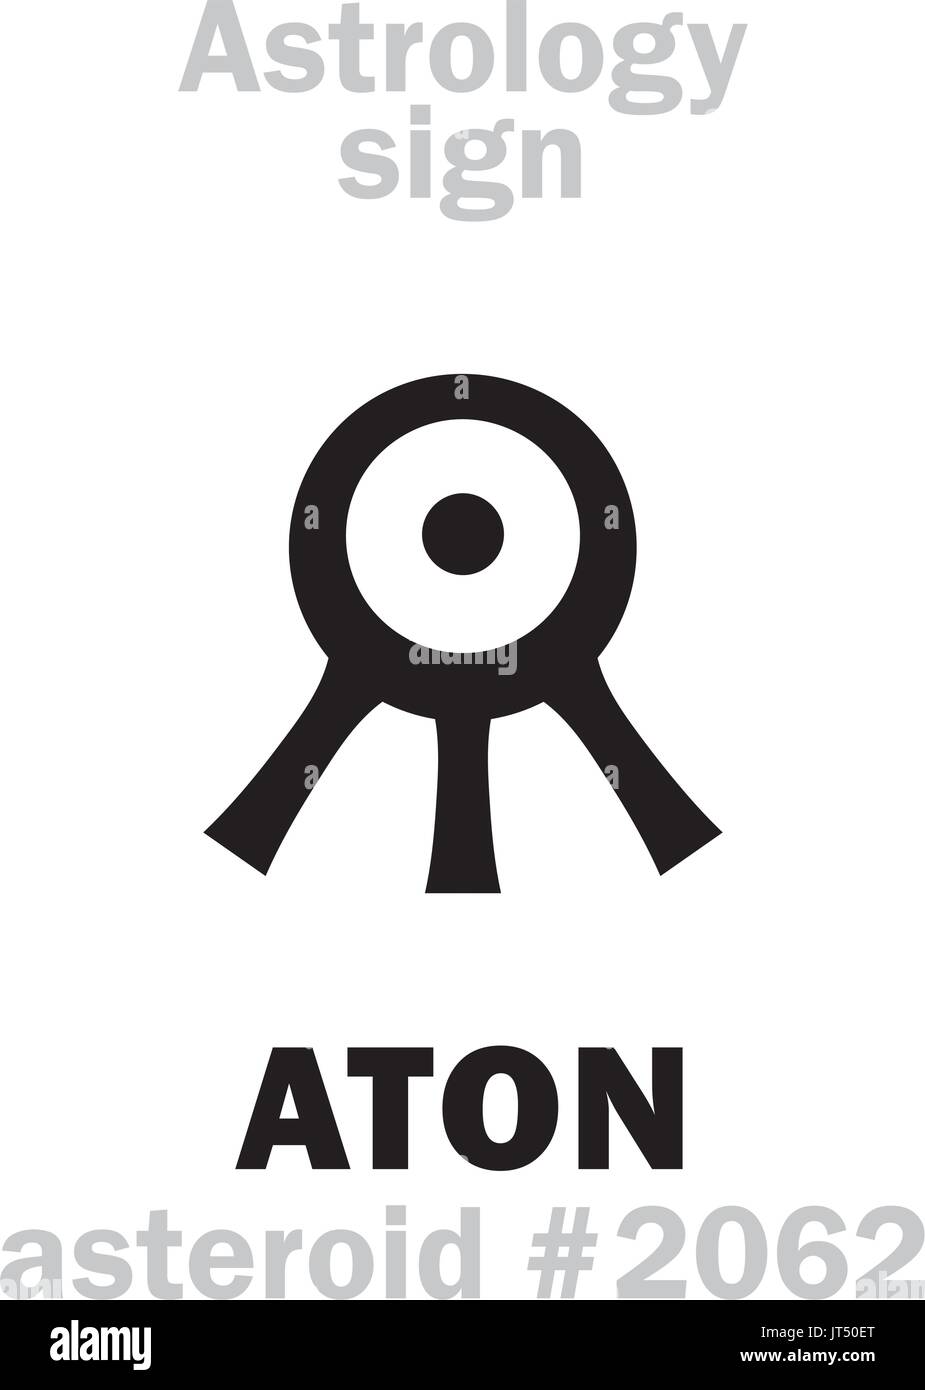 Alfabeto astrologia: ATON (Aten), asteroide #2062. Caratteri geroglifici segno (simbolo unico). Illustrazione Vettoriale